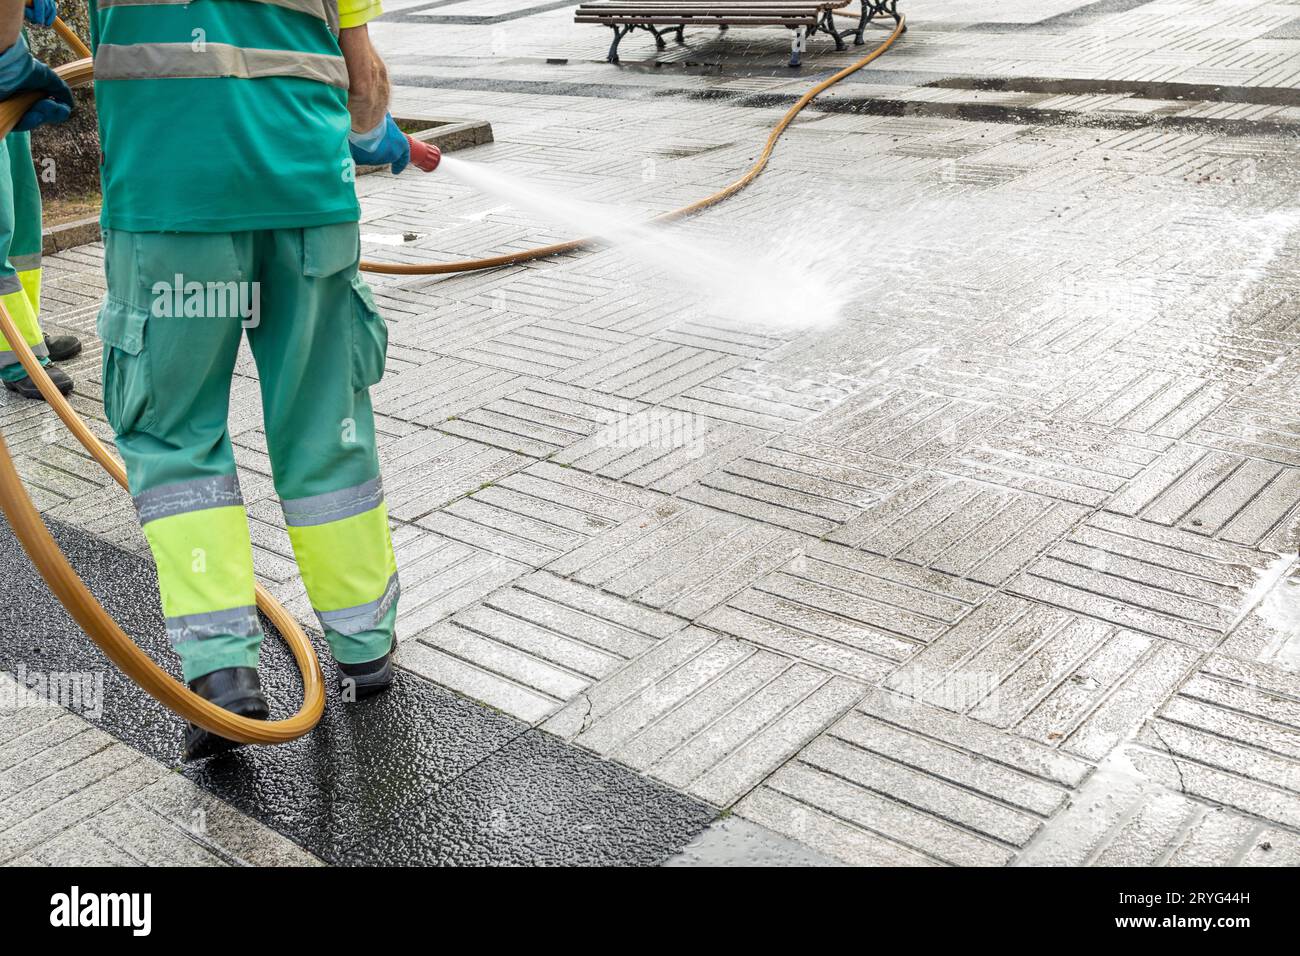 Operaio che pulisce una piazza della città con acqua usando un tubo flessibile. Concetto di manutenzione pubblica. Spazio di copia Foto Stock